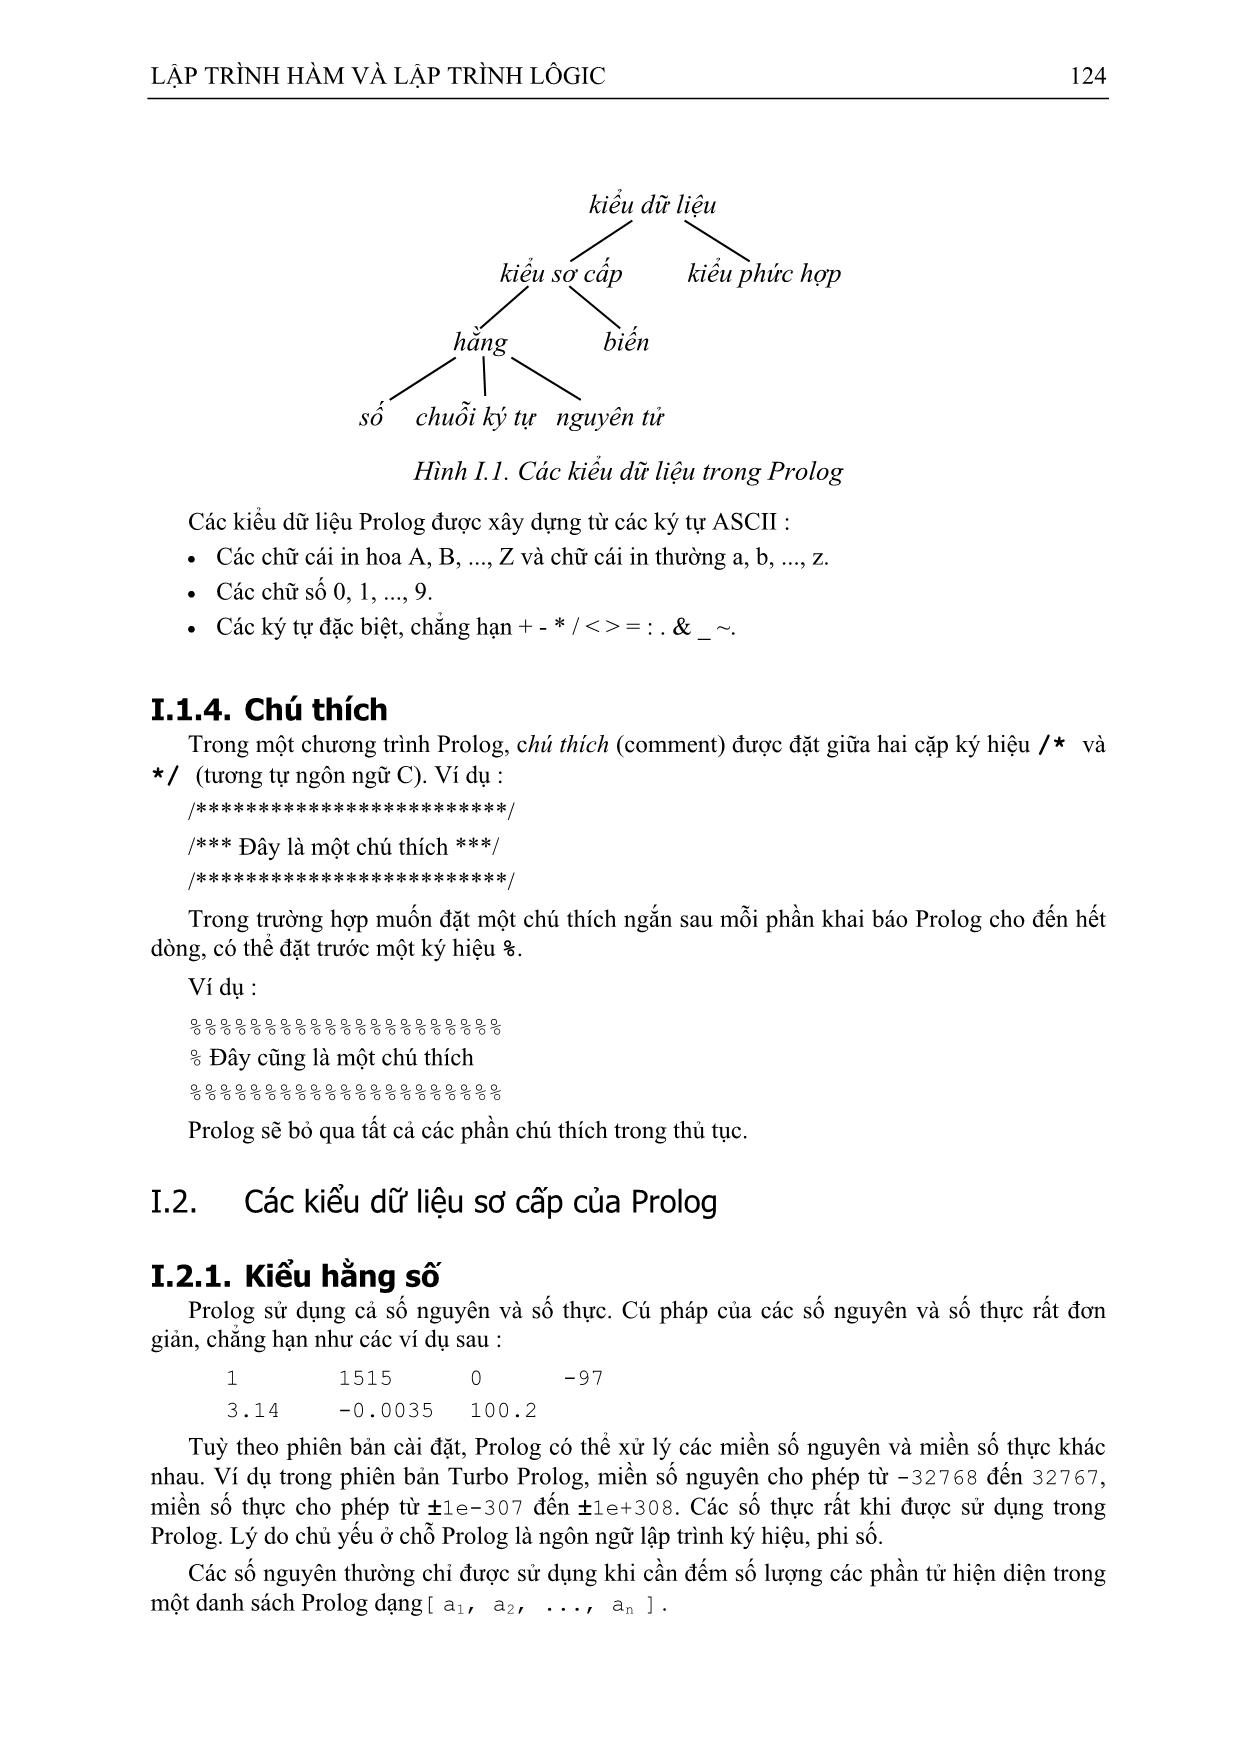 Giáo trình Lập trình hàm và lập trình Logic (Phần 2) trang 3